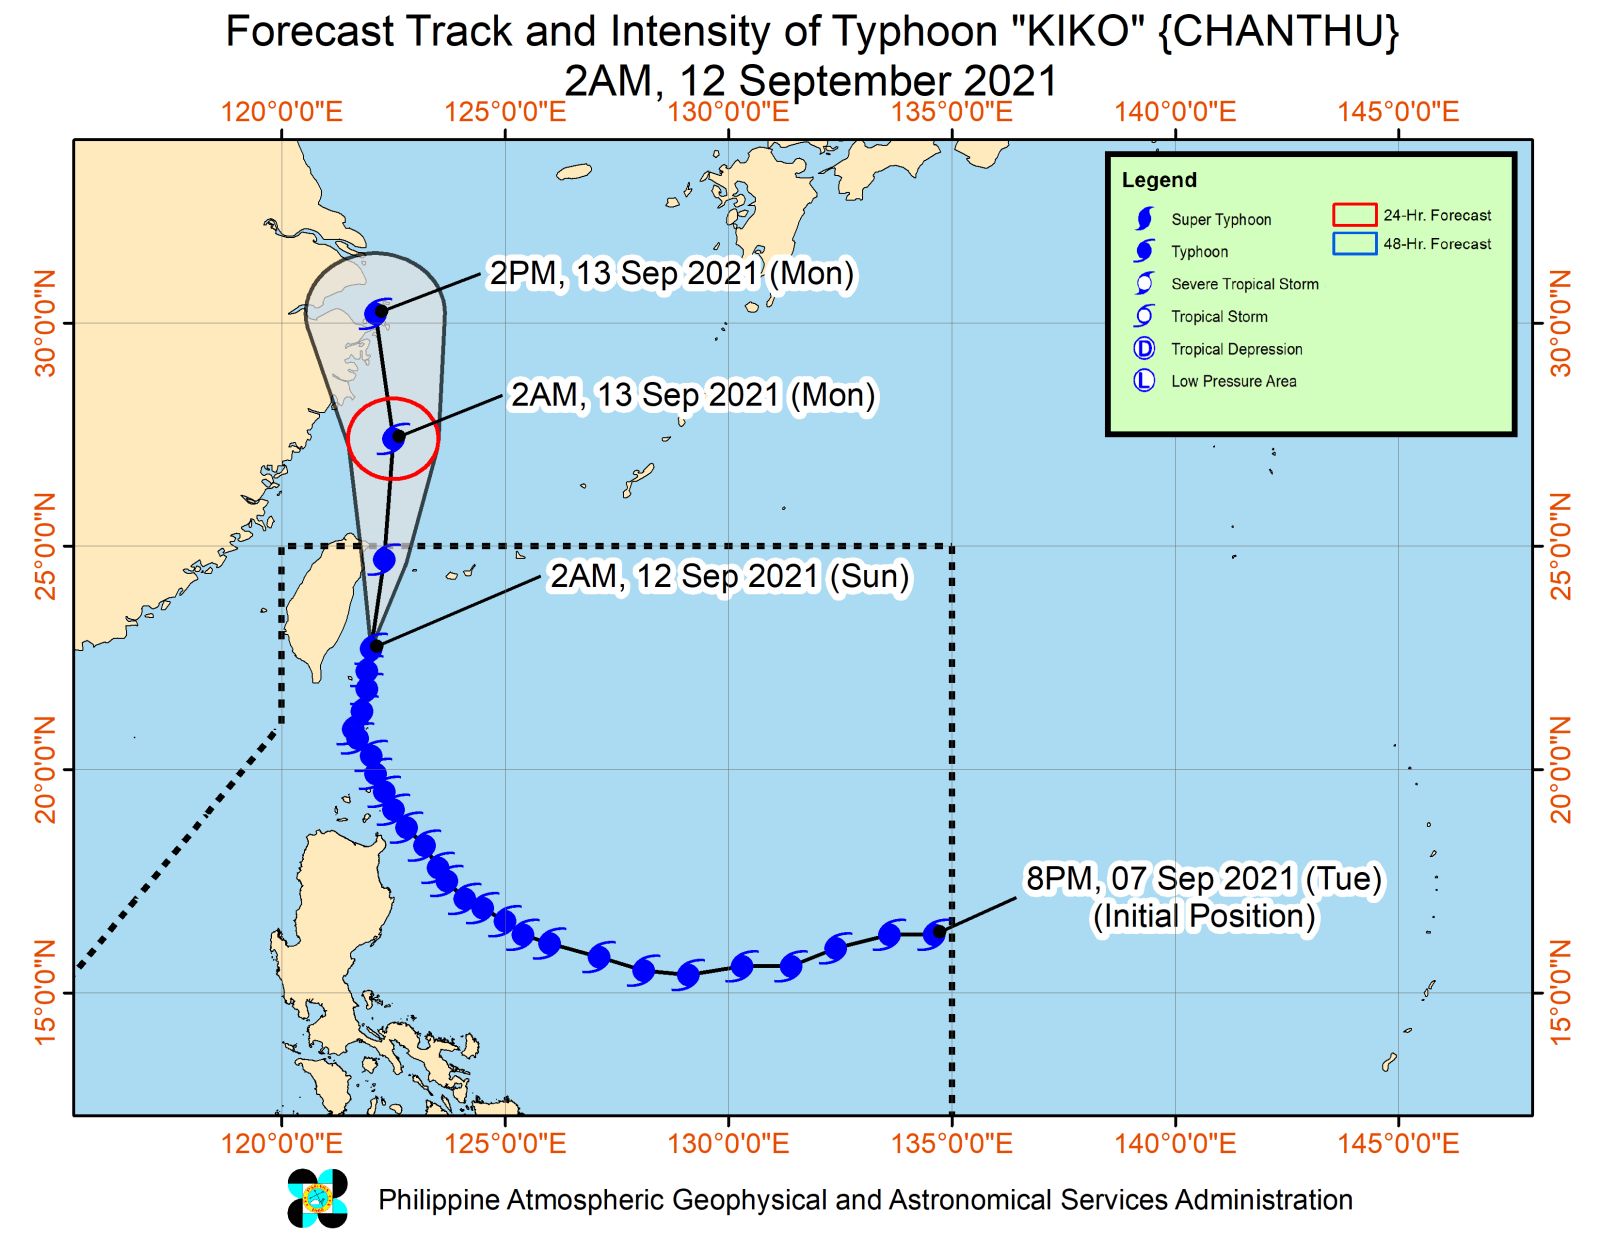 typhoon kiko Photo: Forecast track and intensity of Typhoon Kiko. Photo courtesy of Pagasa.